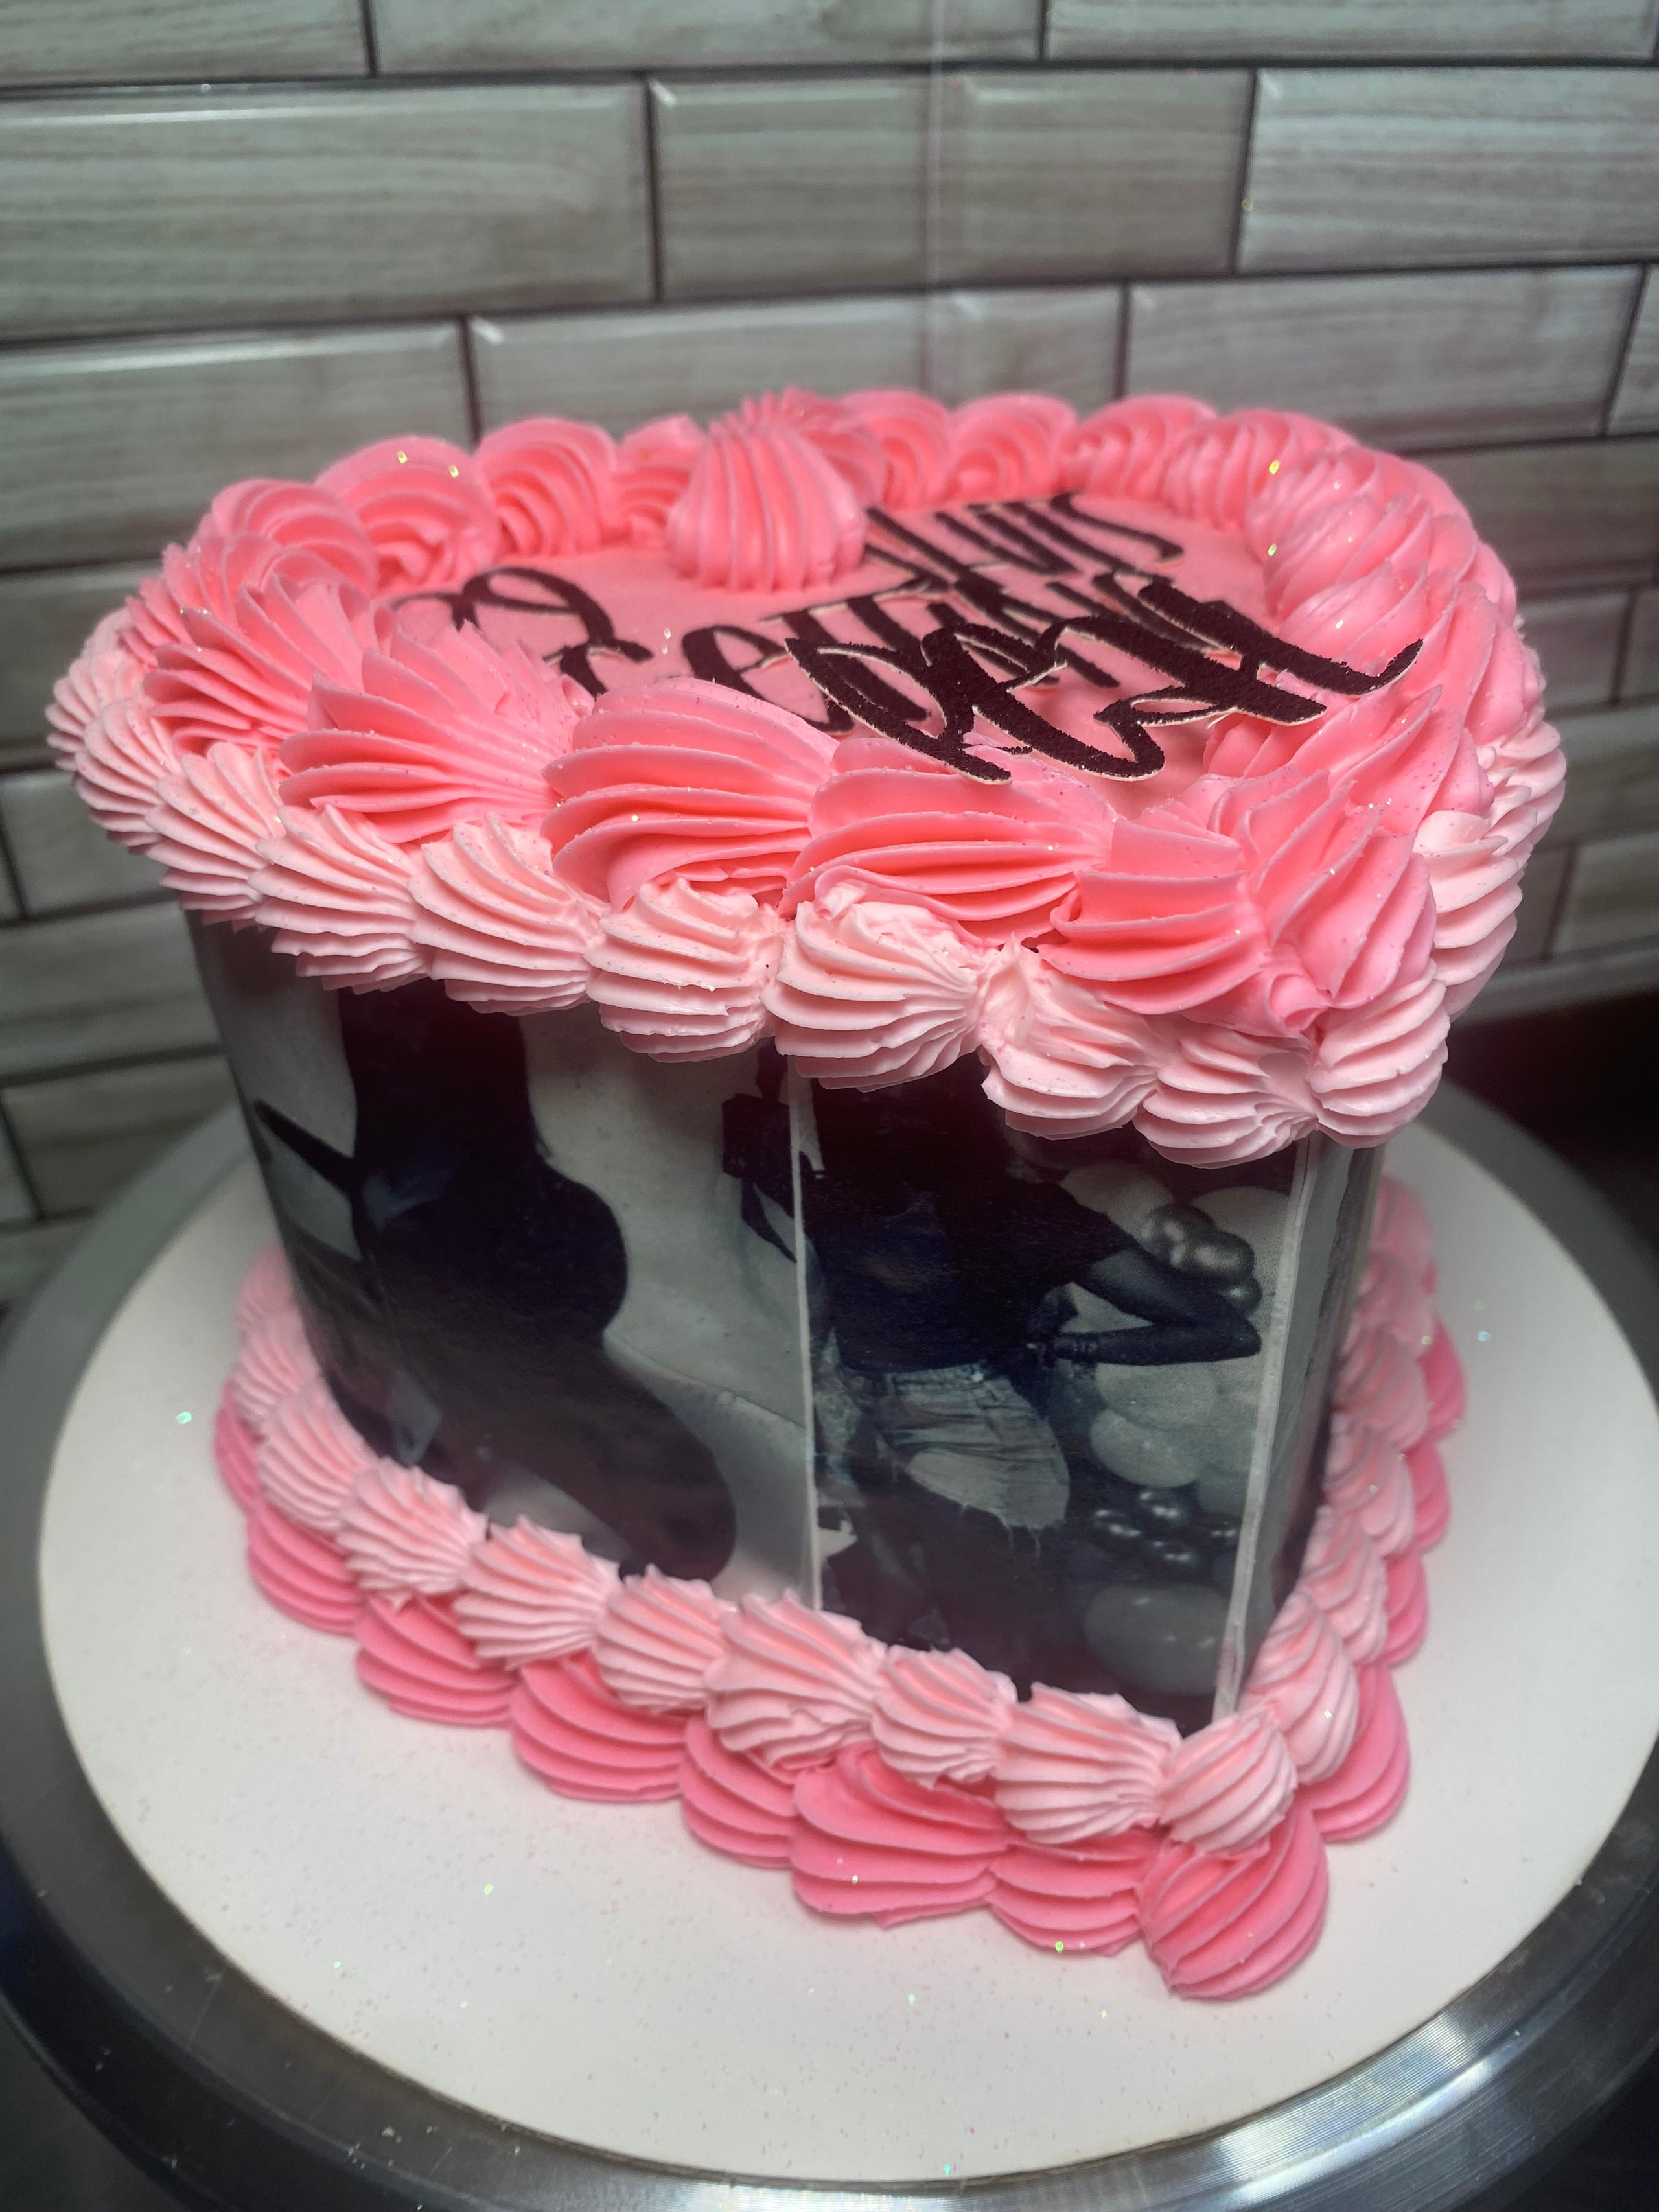 Pink glitter heart cake. Can't get over this cake from last week.  Absolutely love it! #baltimorebaker #baltimorecakes #dmvbaker #dmvcakes…